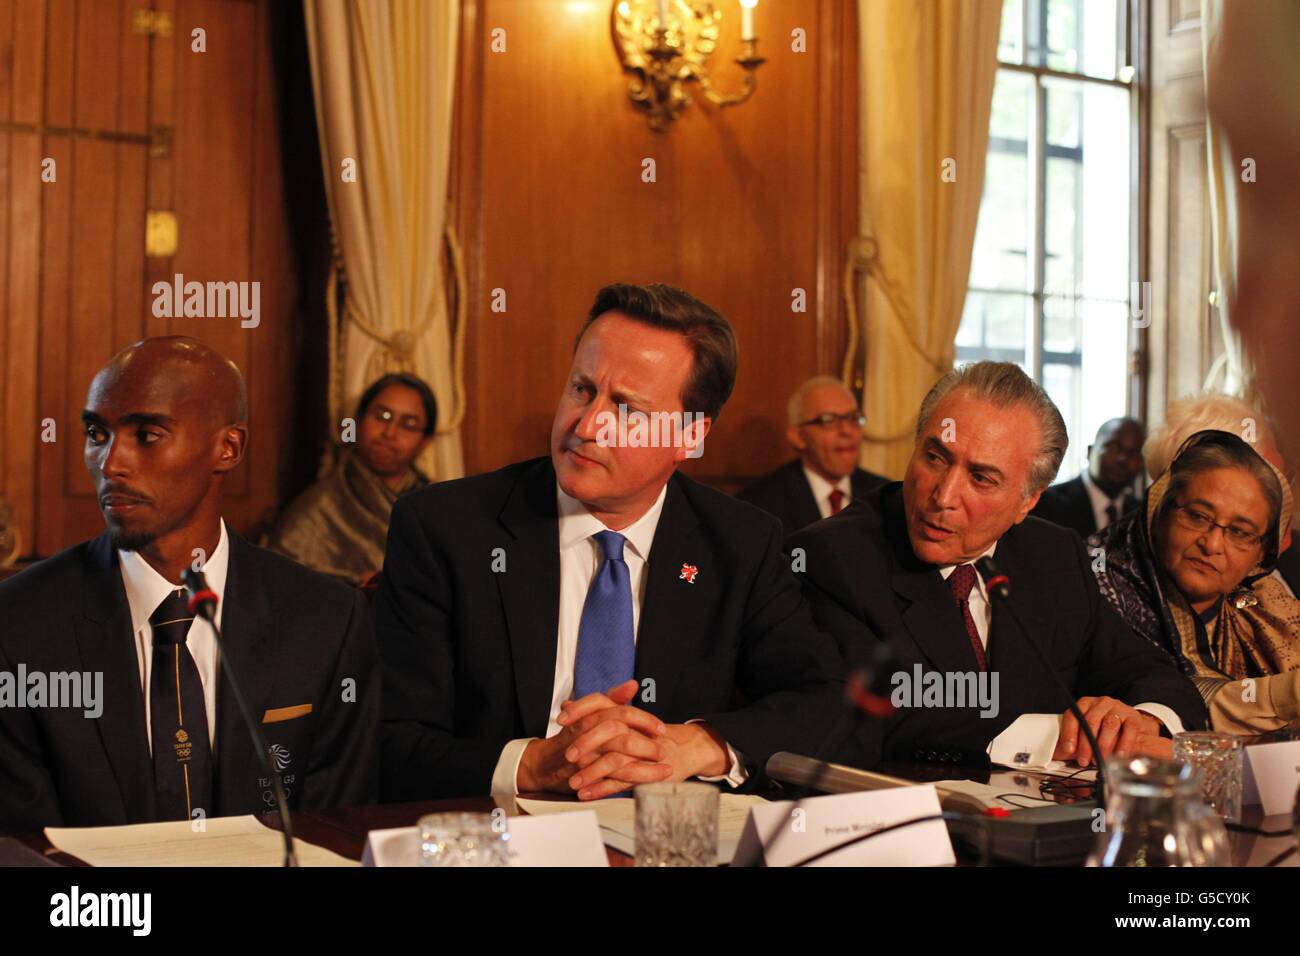 De izquierda a derecha. El doble campeón olímpico Mo Farah, el primer ministro David Cameron, el vicepresidente de Brasil Michel Temer, el primer ministro de Bangladesh Sheikh Hasina durante la 'cumbre del hambre' en 10 Downing Street en Londres. Foto de stock